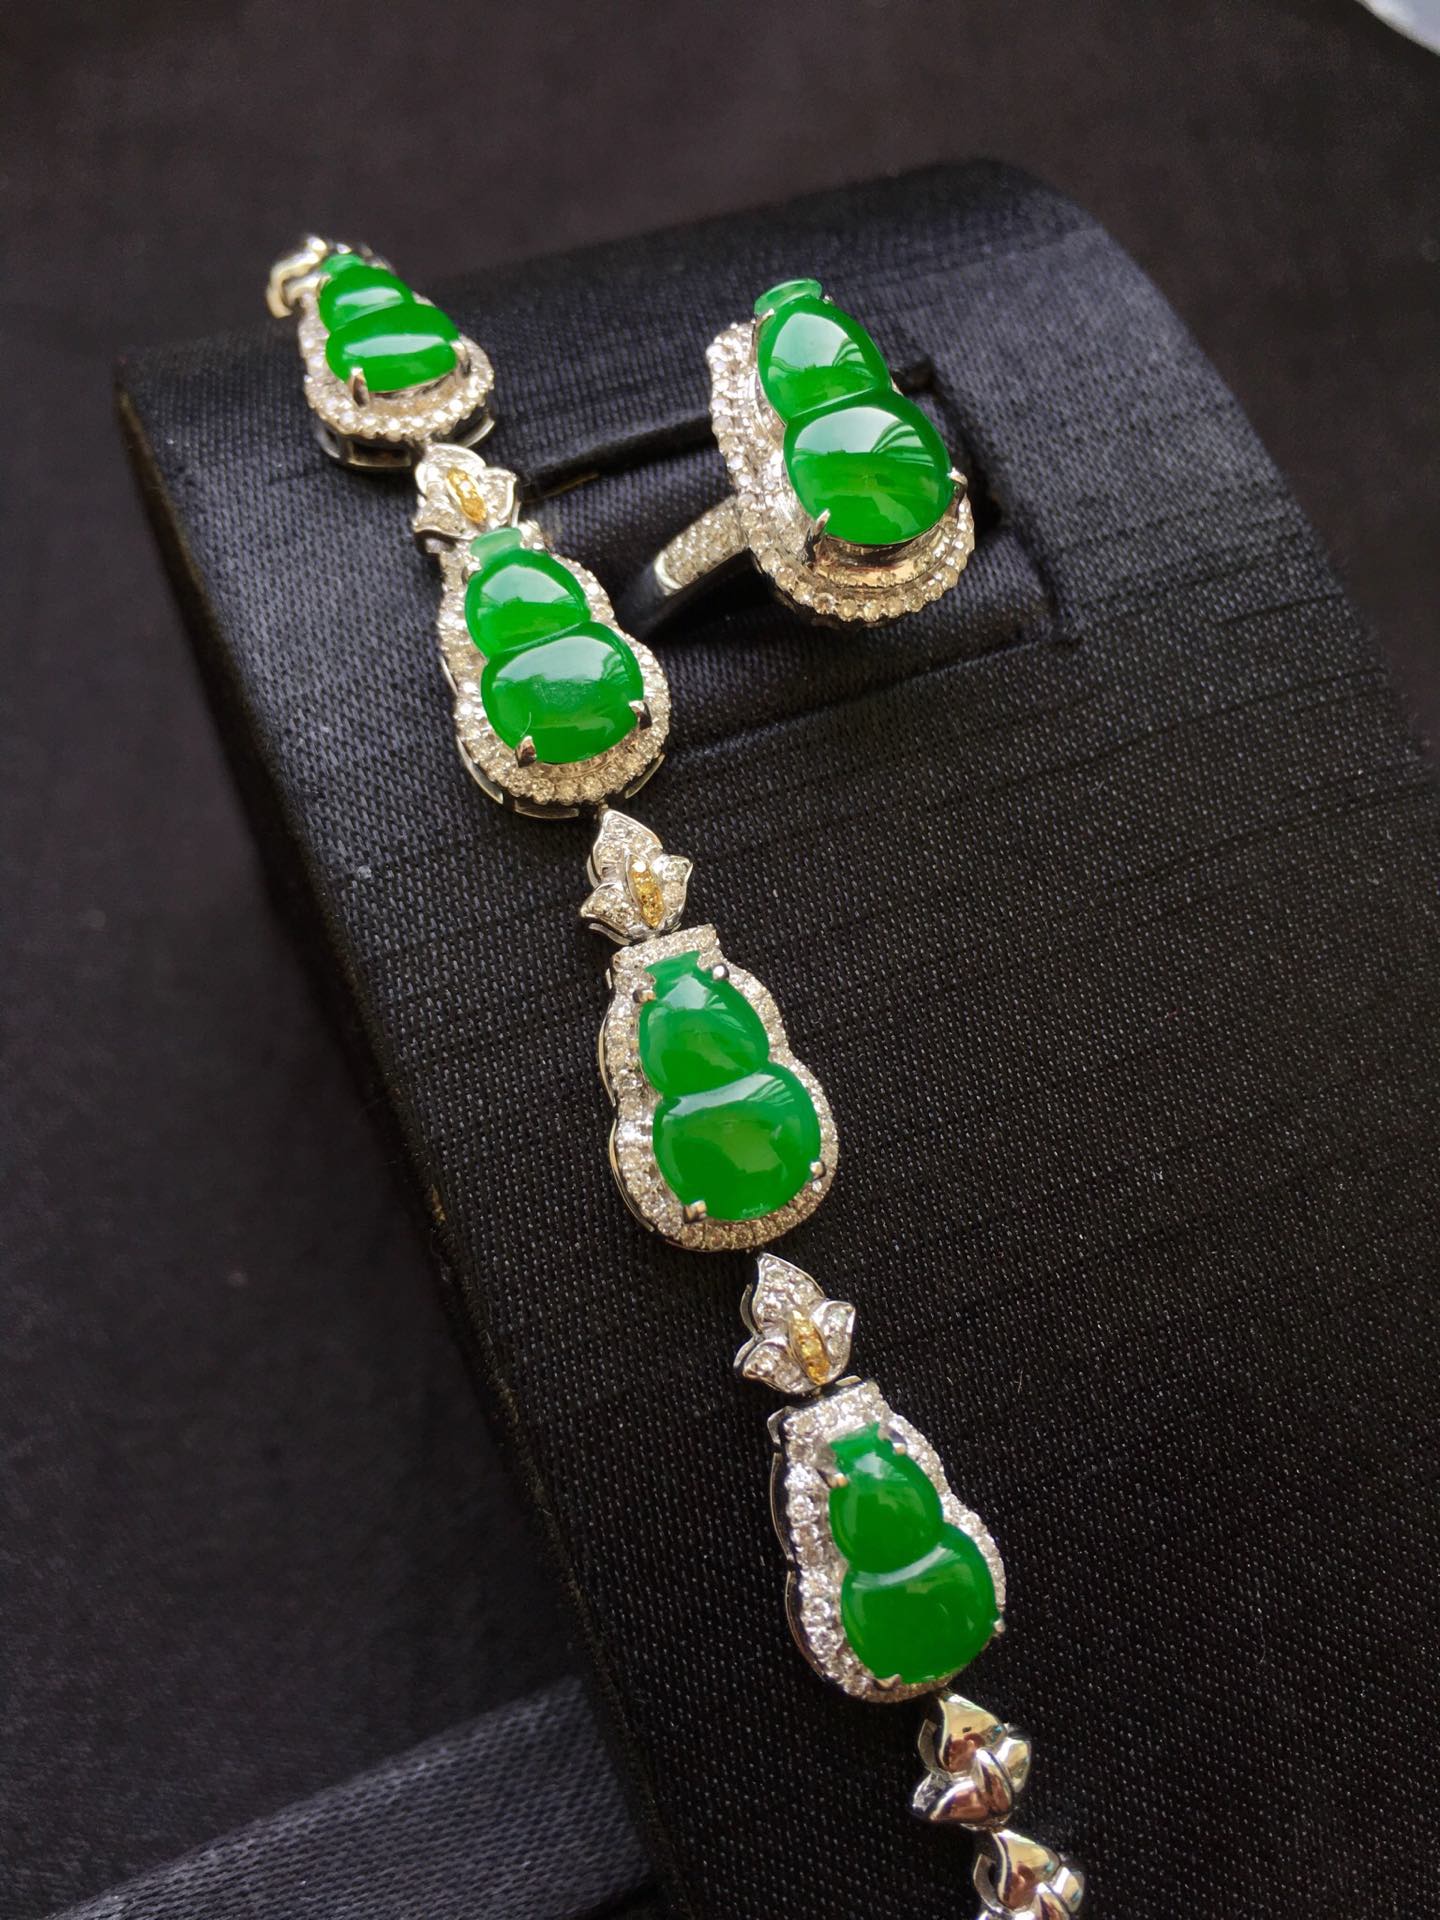 阳绿葫芦手链➕戒指套装，完美色辣手链裸石11*7*3戒指裸石12.5*7*3价格